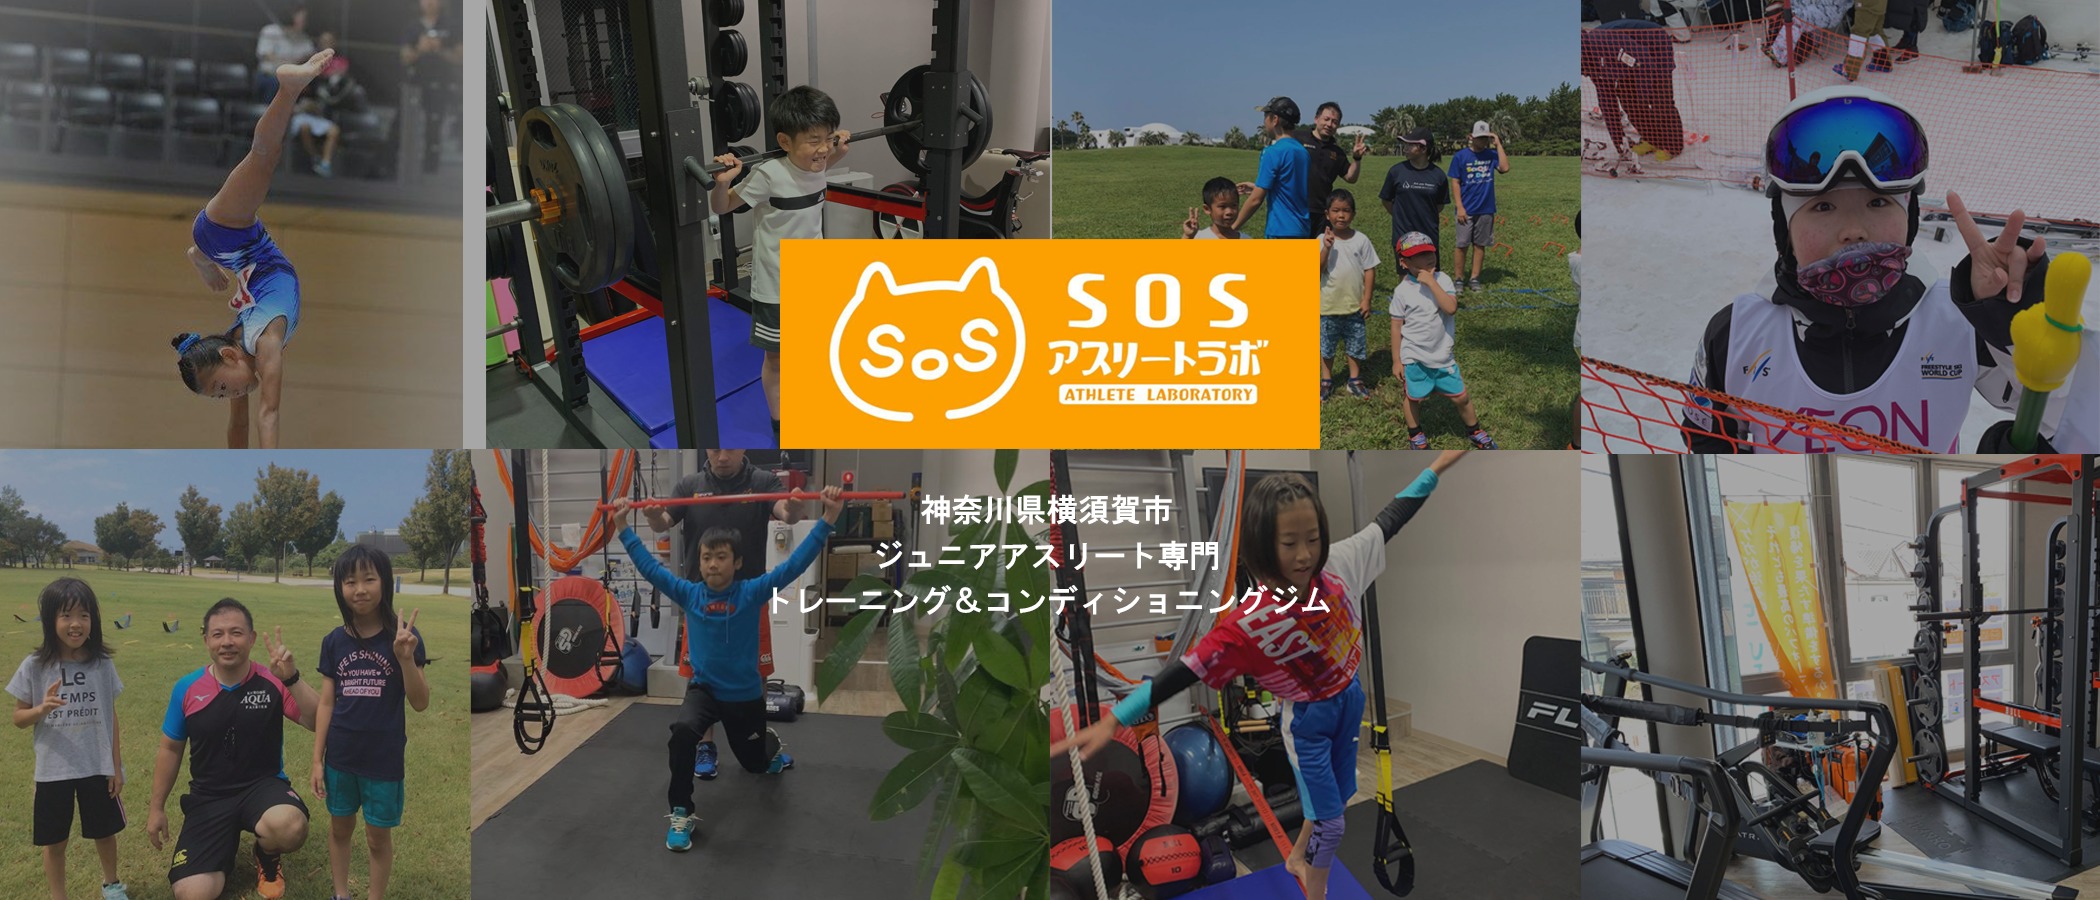 SOSアスリートラボ横須賀のヘッダー画像